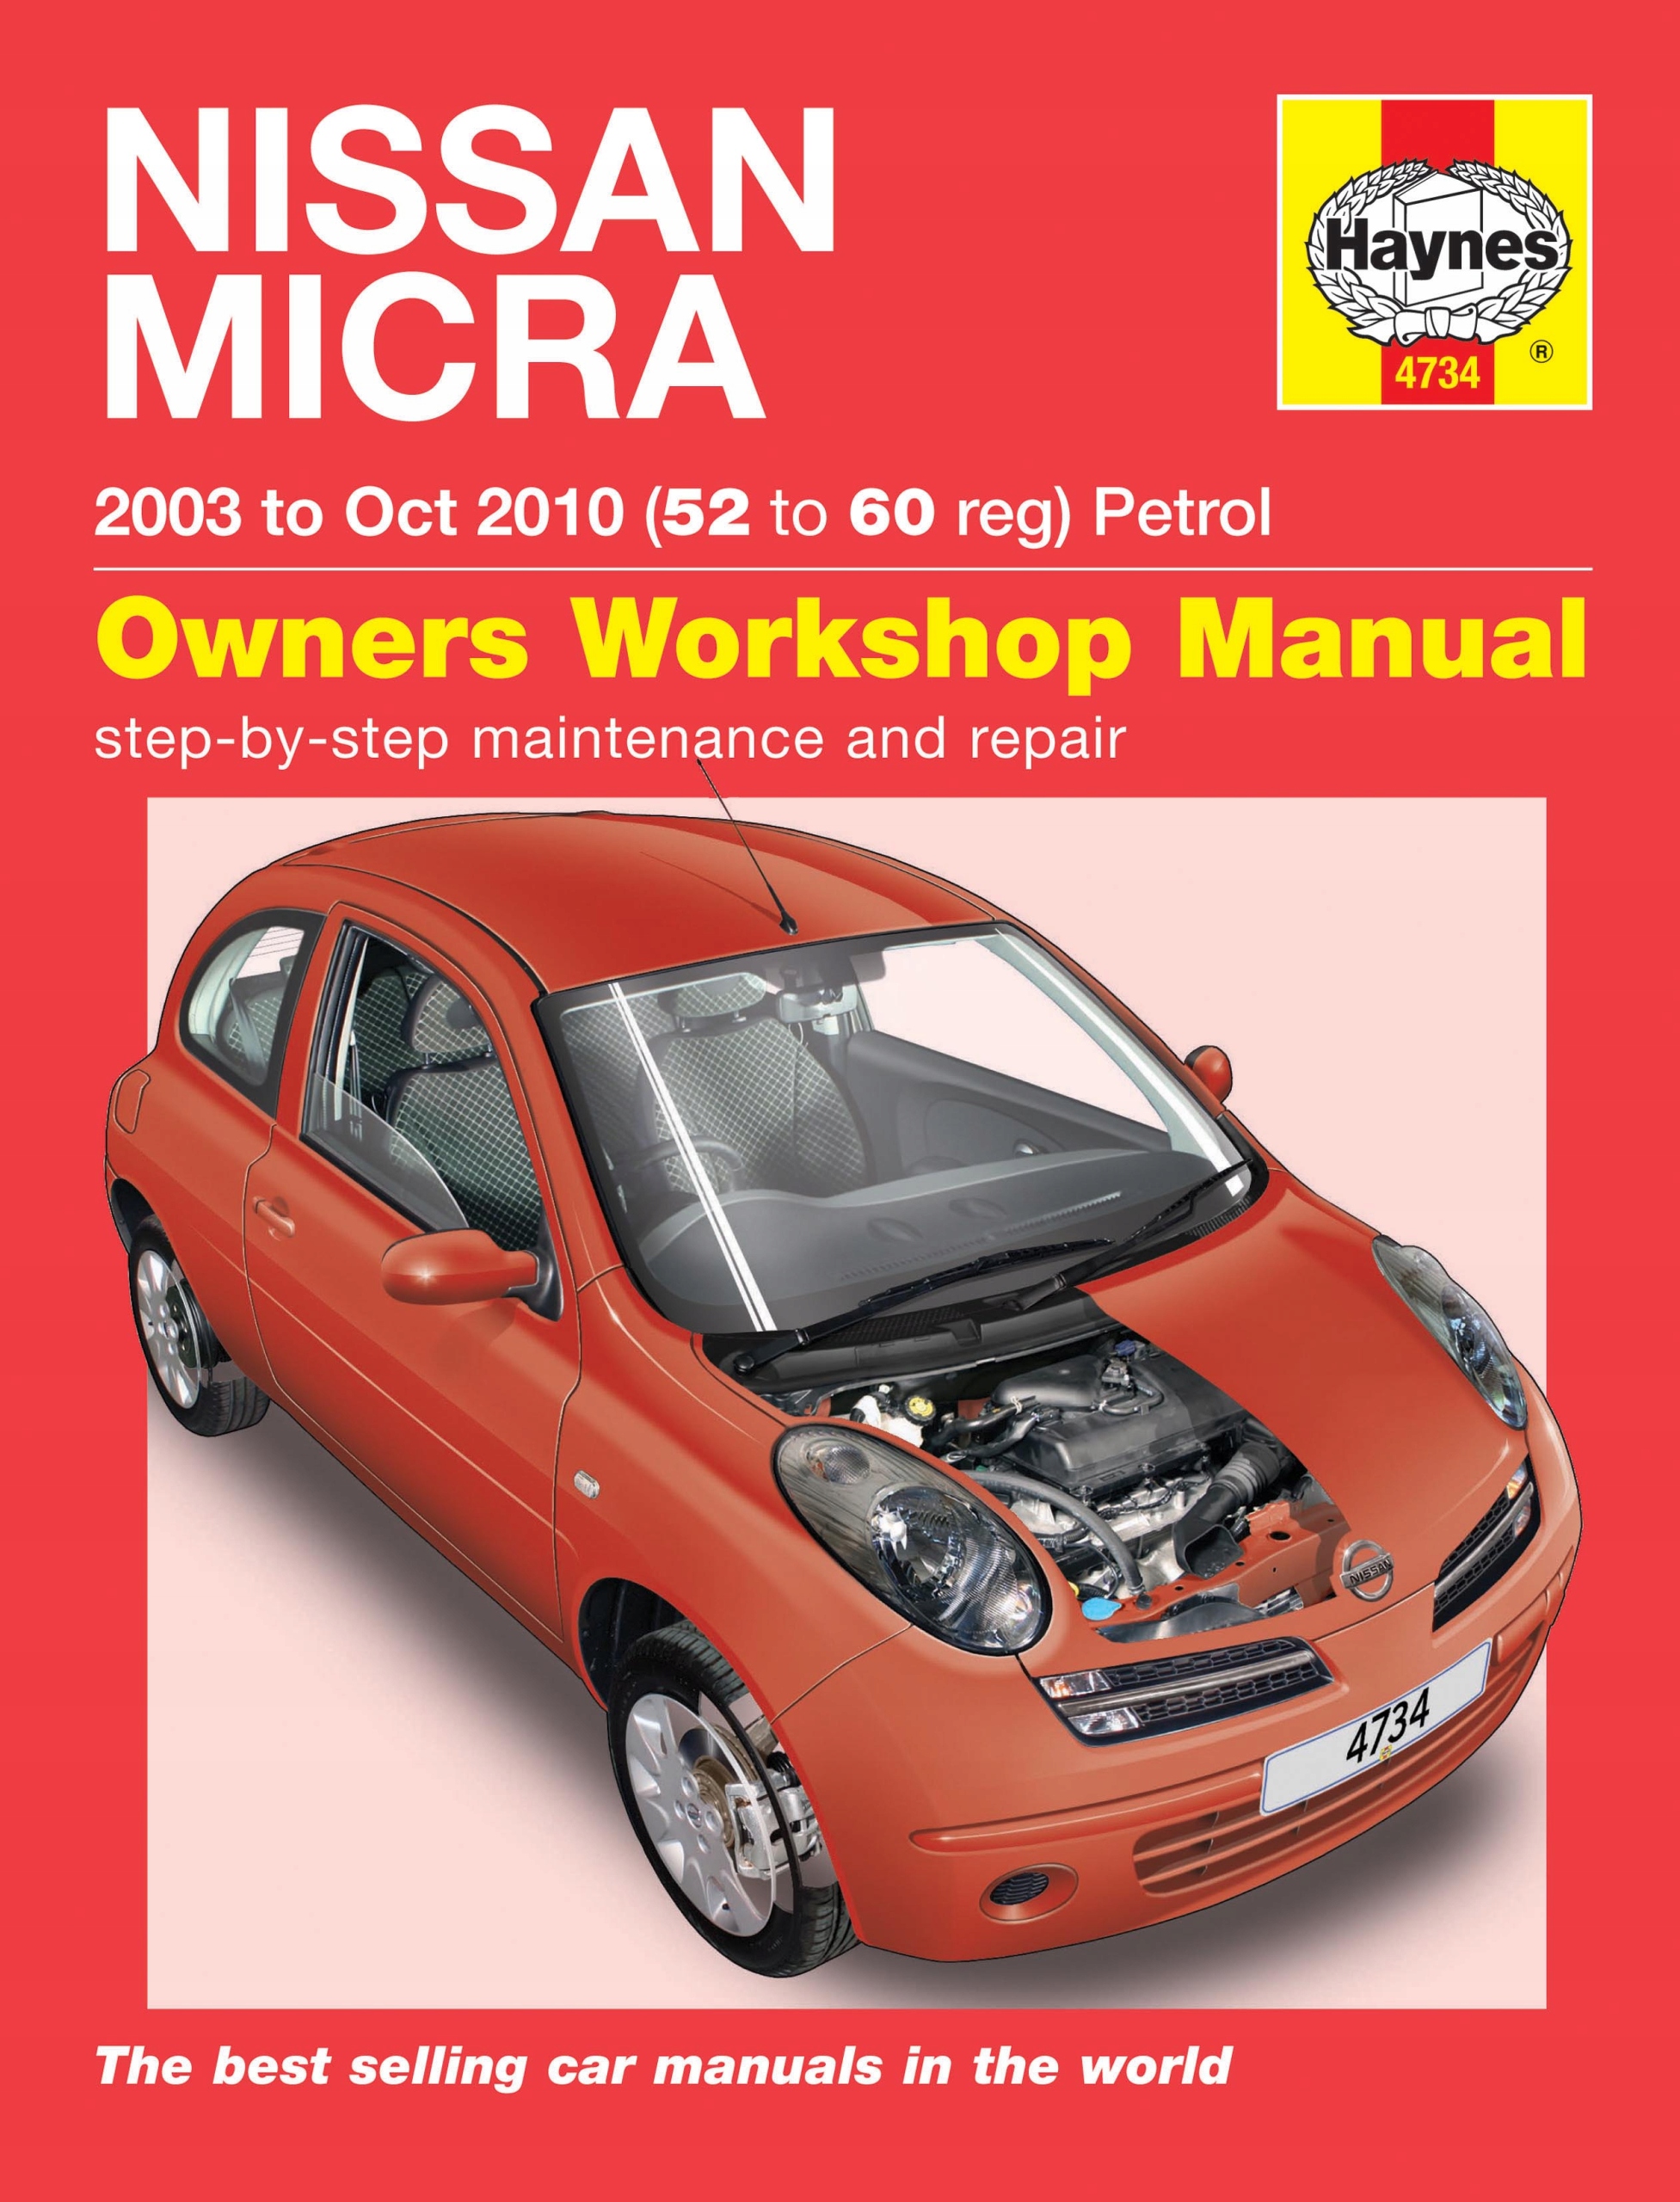 Nissan Micra 1.0 Benzyna (03-10) Przegląd Naprawa - 116,32 Zł - Allegro.pl - Raty 0%, Darmowa Dostawa Ze Smart! - Pionki - Id Oferty: 9551967447